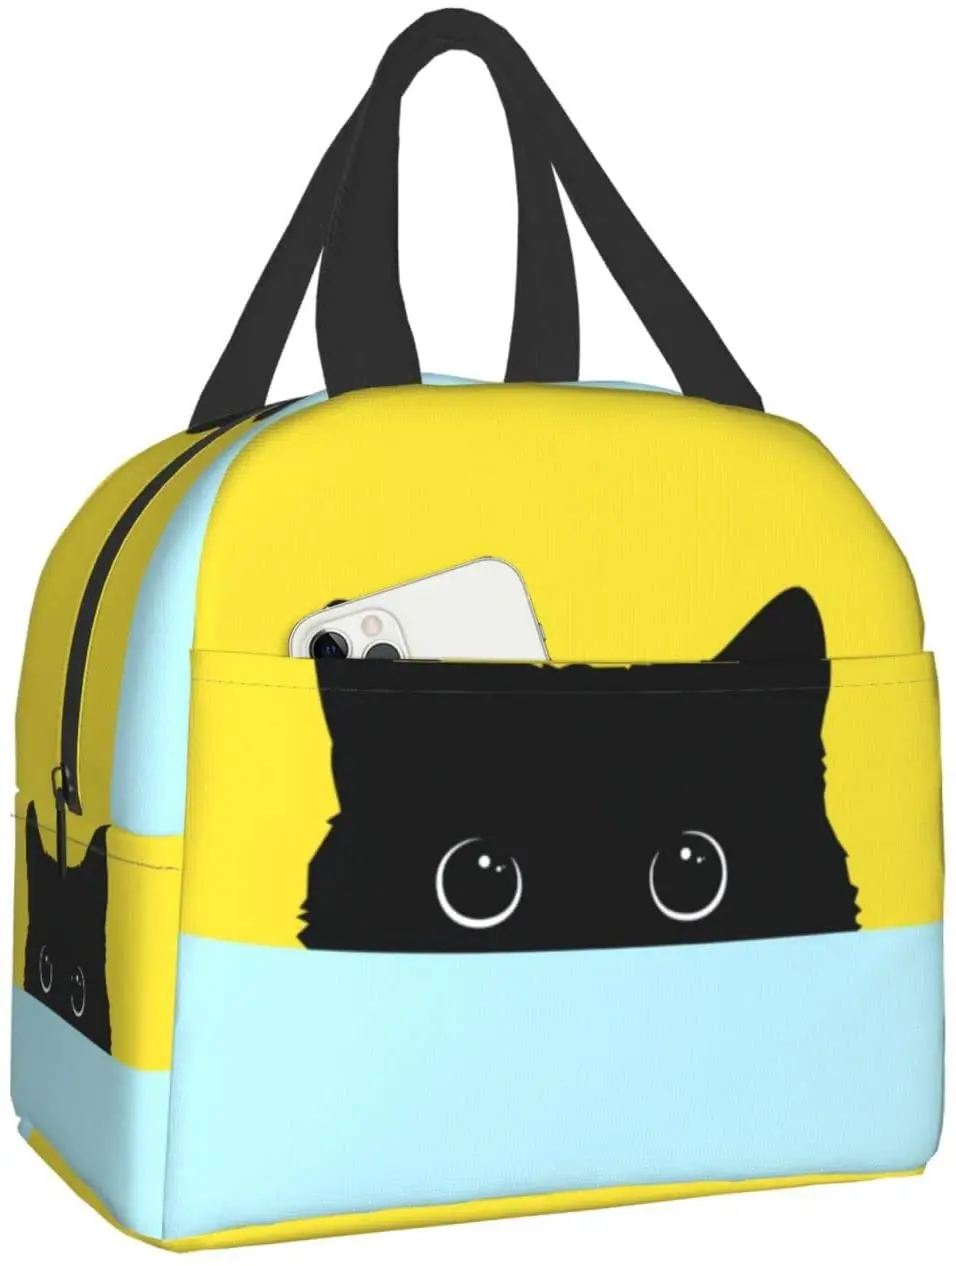 

Изолированная сумка для ланча, многоразовая Термосумка-тоут с рисунком кошки, с передним карманом, для путешествий, работы, пешего туризма, пикника